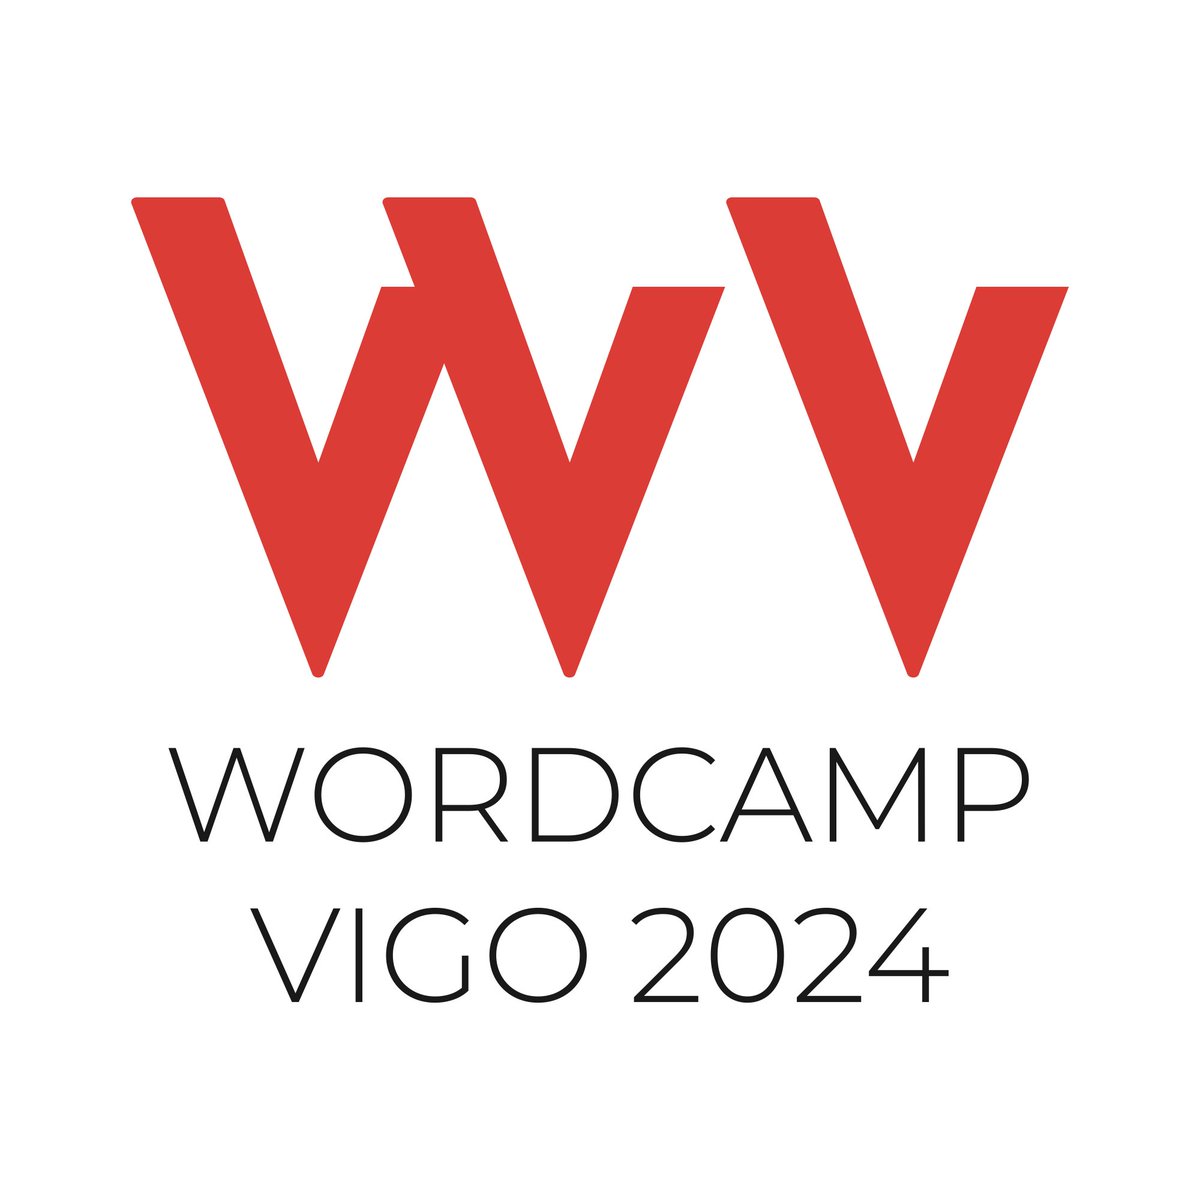 👩🏼‍💻 𝐖𝐎𝐑𝐃𝐂𝐀𝐌𝐏 𝐕𝐈𝐆𝐎 𝟐𝟎𝟐𝟒 👨🏻‍💻 #Vigo acogerá entre el 24 y el 26 de mayo su primer evento #WordCamp, un fin de semana completo que reunirá a profesionales y aficionados al diseño, el desarrollo web y el marketing digital en el #MarDeVigo. 📌 vigo.wordcamp.org/2024/